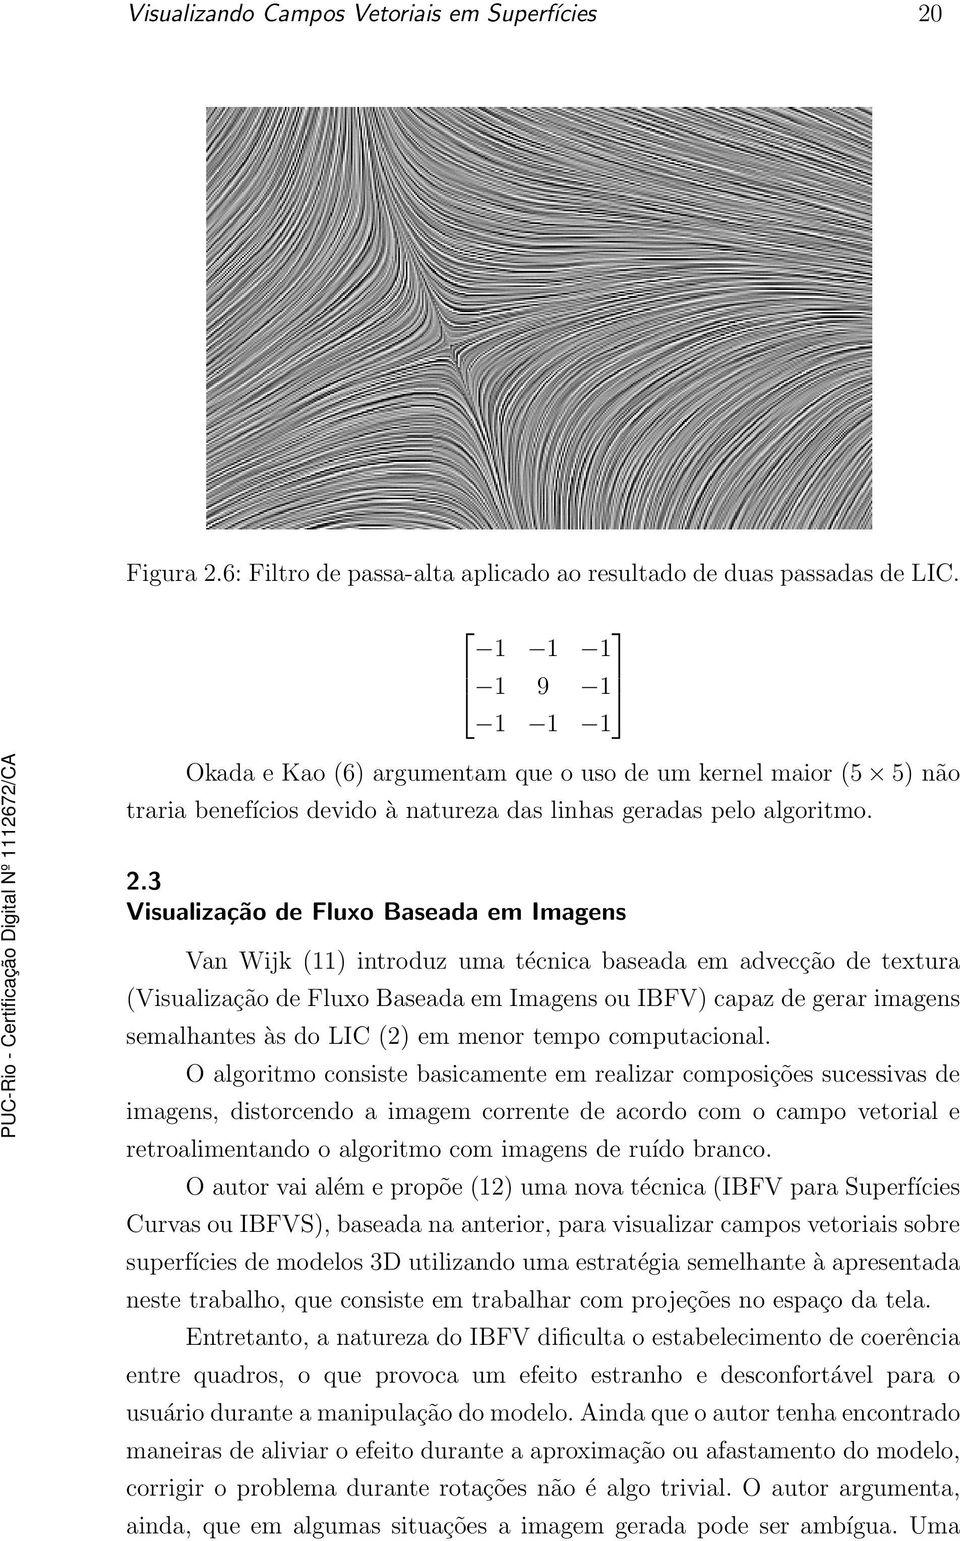 3 Visualização de Fluxo Baseada em Imagens Van Wijk (11) introduz uma técnica baseada em advecção de textura (Visualização de Fluxo Baseada em Imagens ou IBFV) capaz de gerar imagens semalhantes às